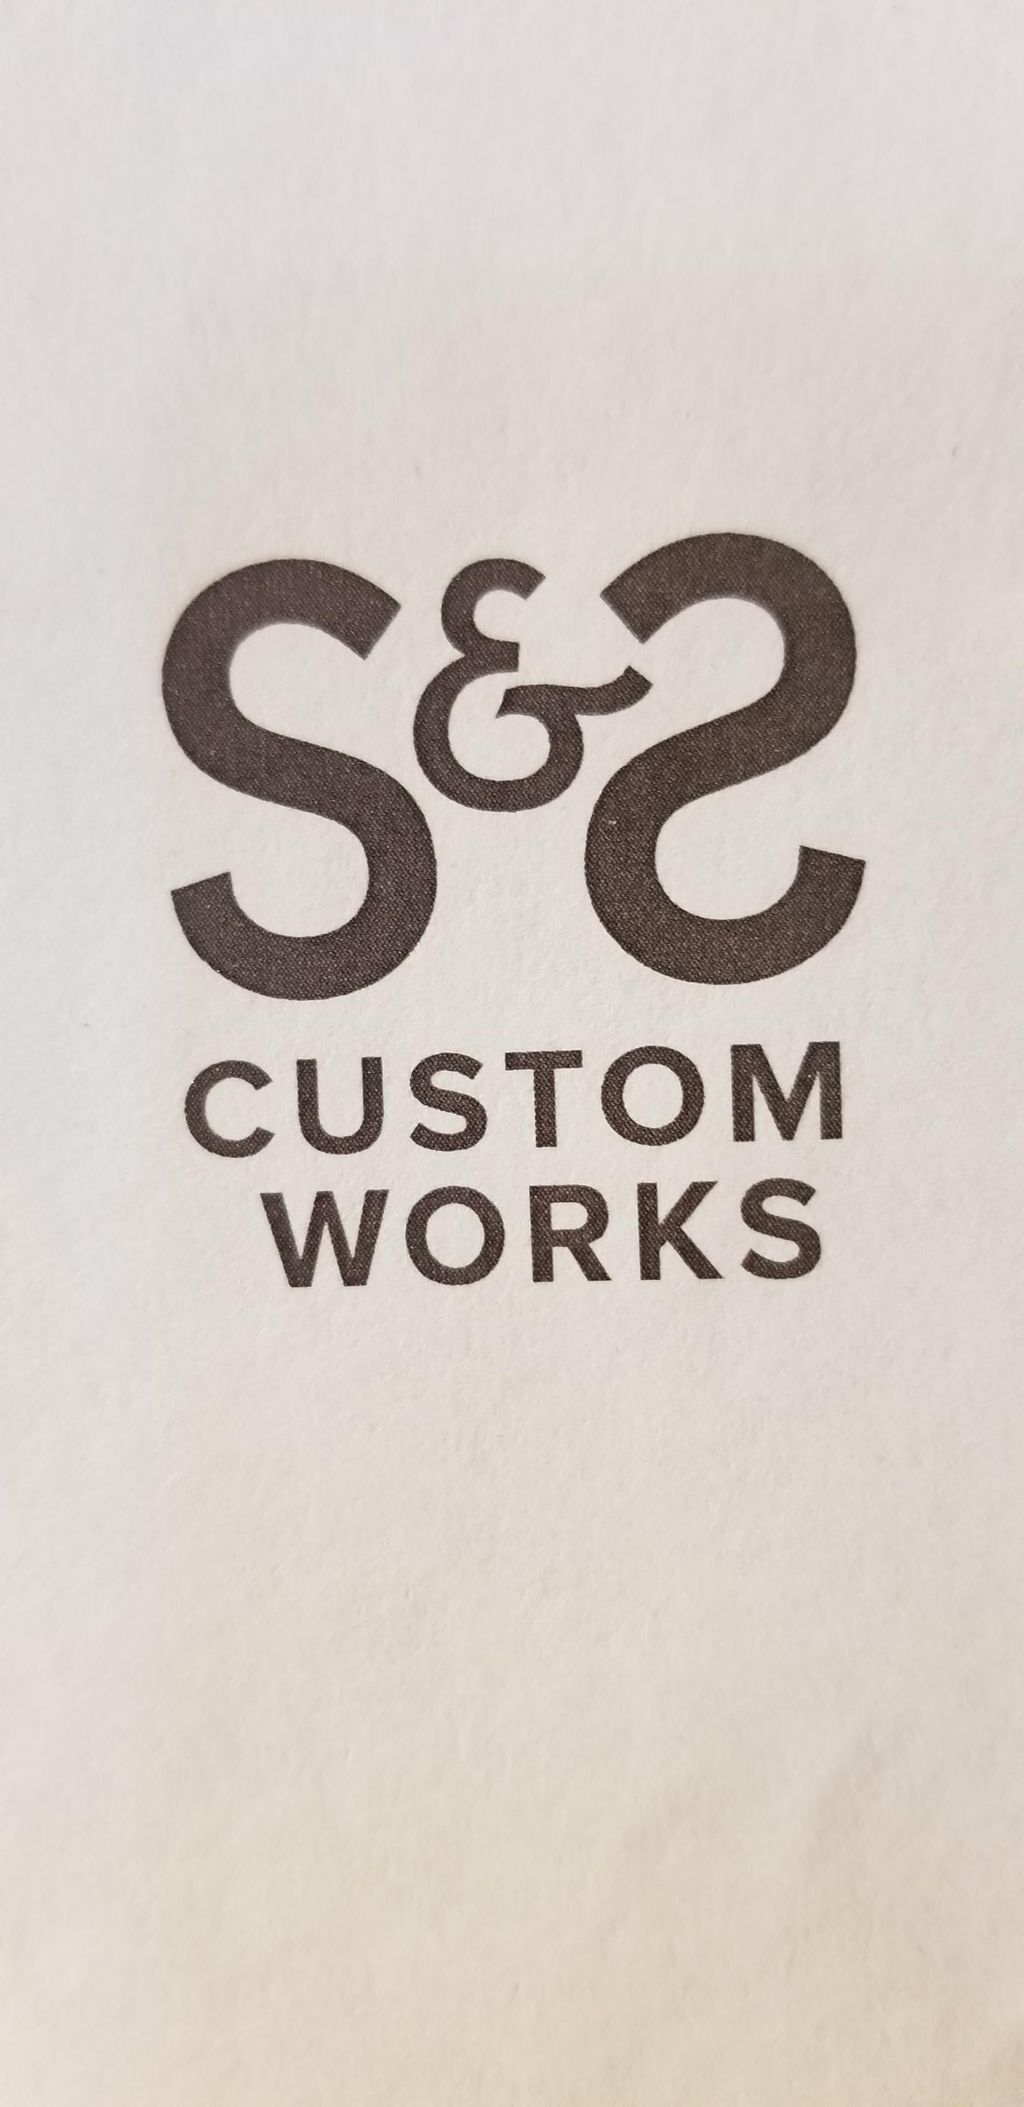 S&S Custom